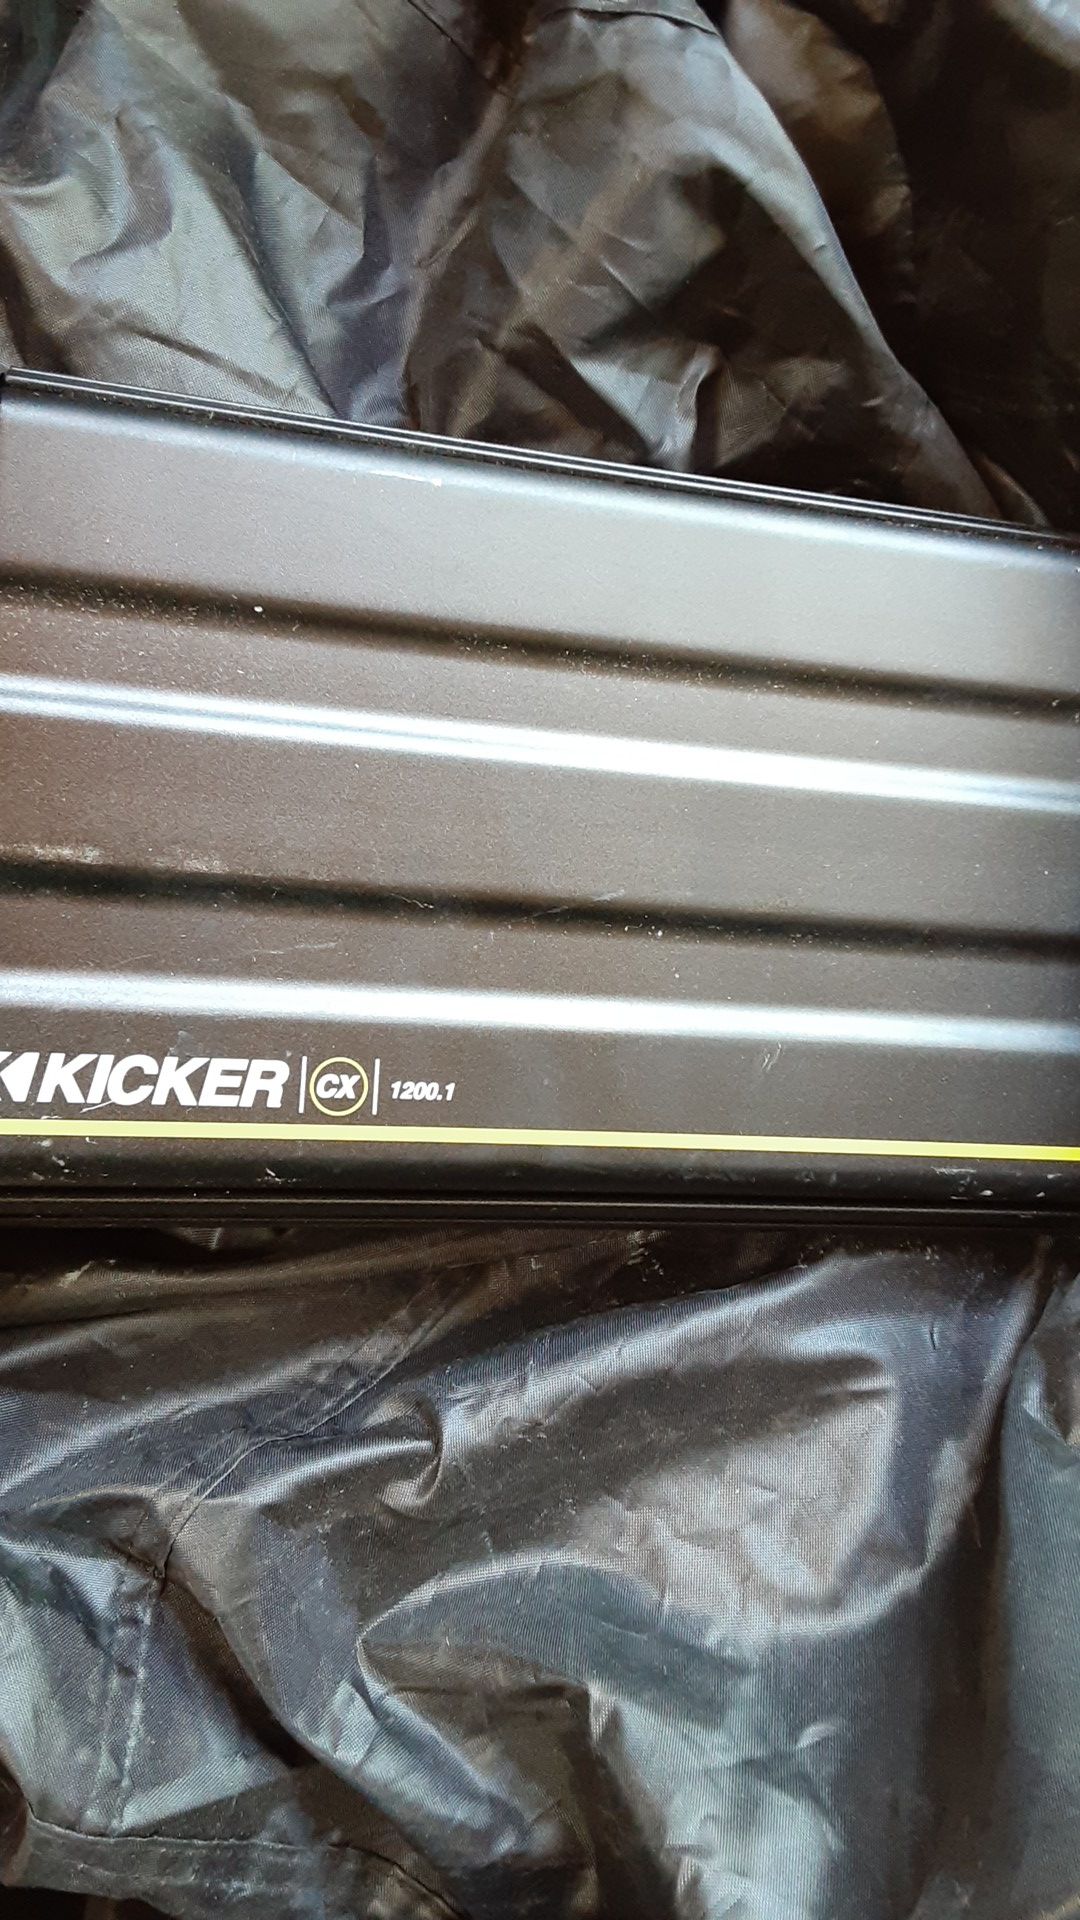 Power amplifier kicker cc 1200.1 watt